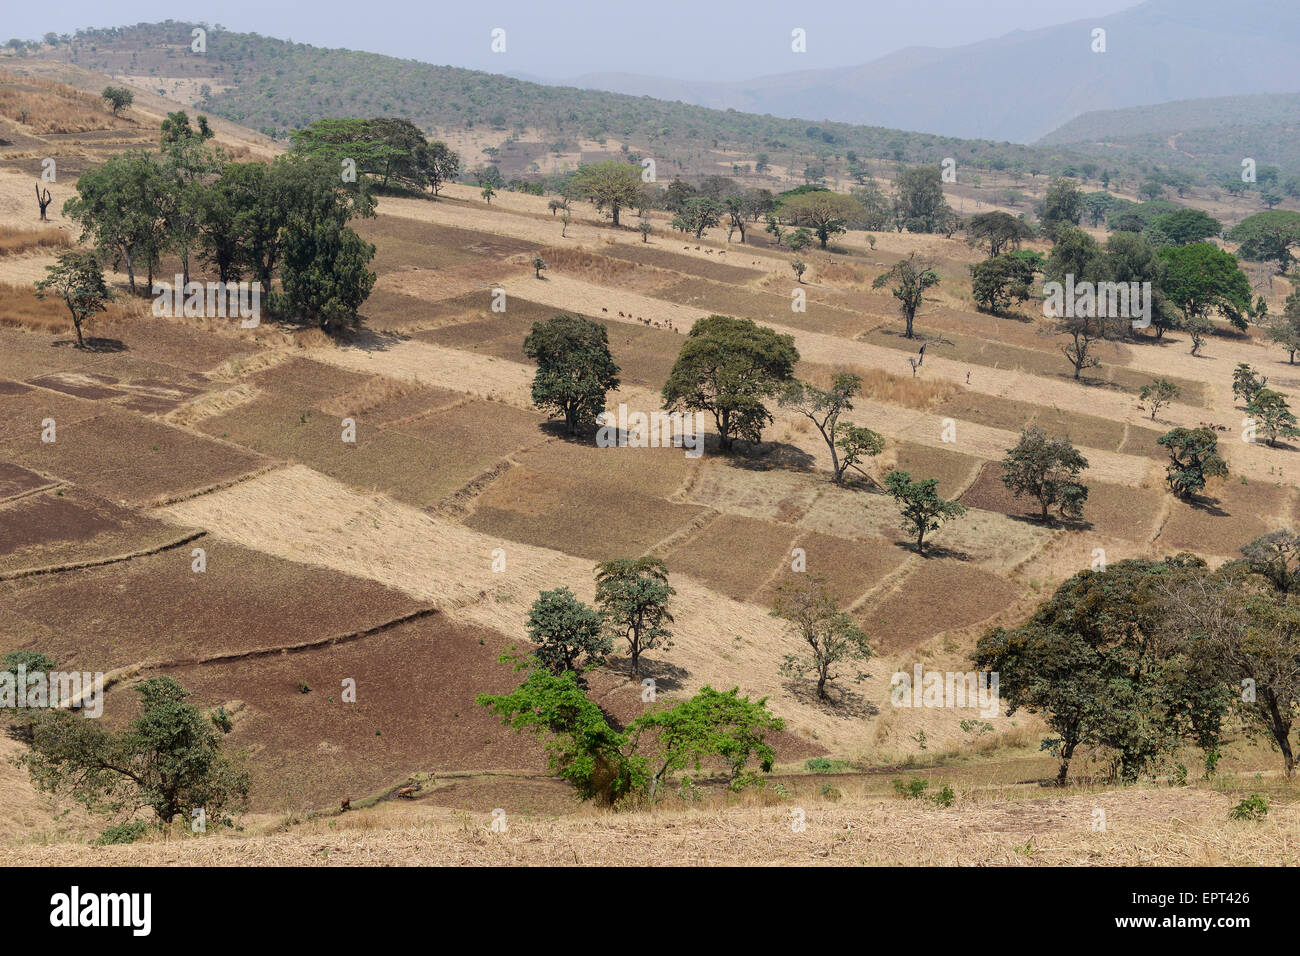 Etiopia Gambela, piccole aziende agricole in highland / AETHIOPIEN Gambela, kleinbaeuerliche Landwirtschaft im Hochland Foto Stock